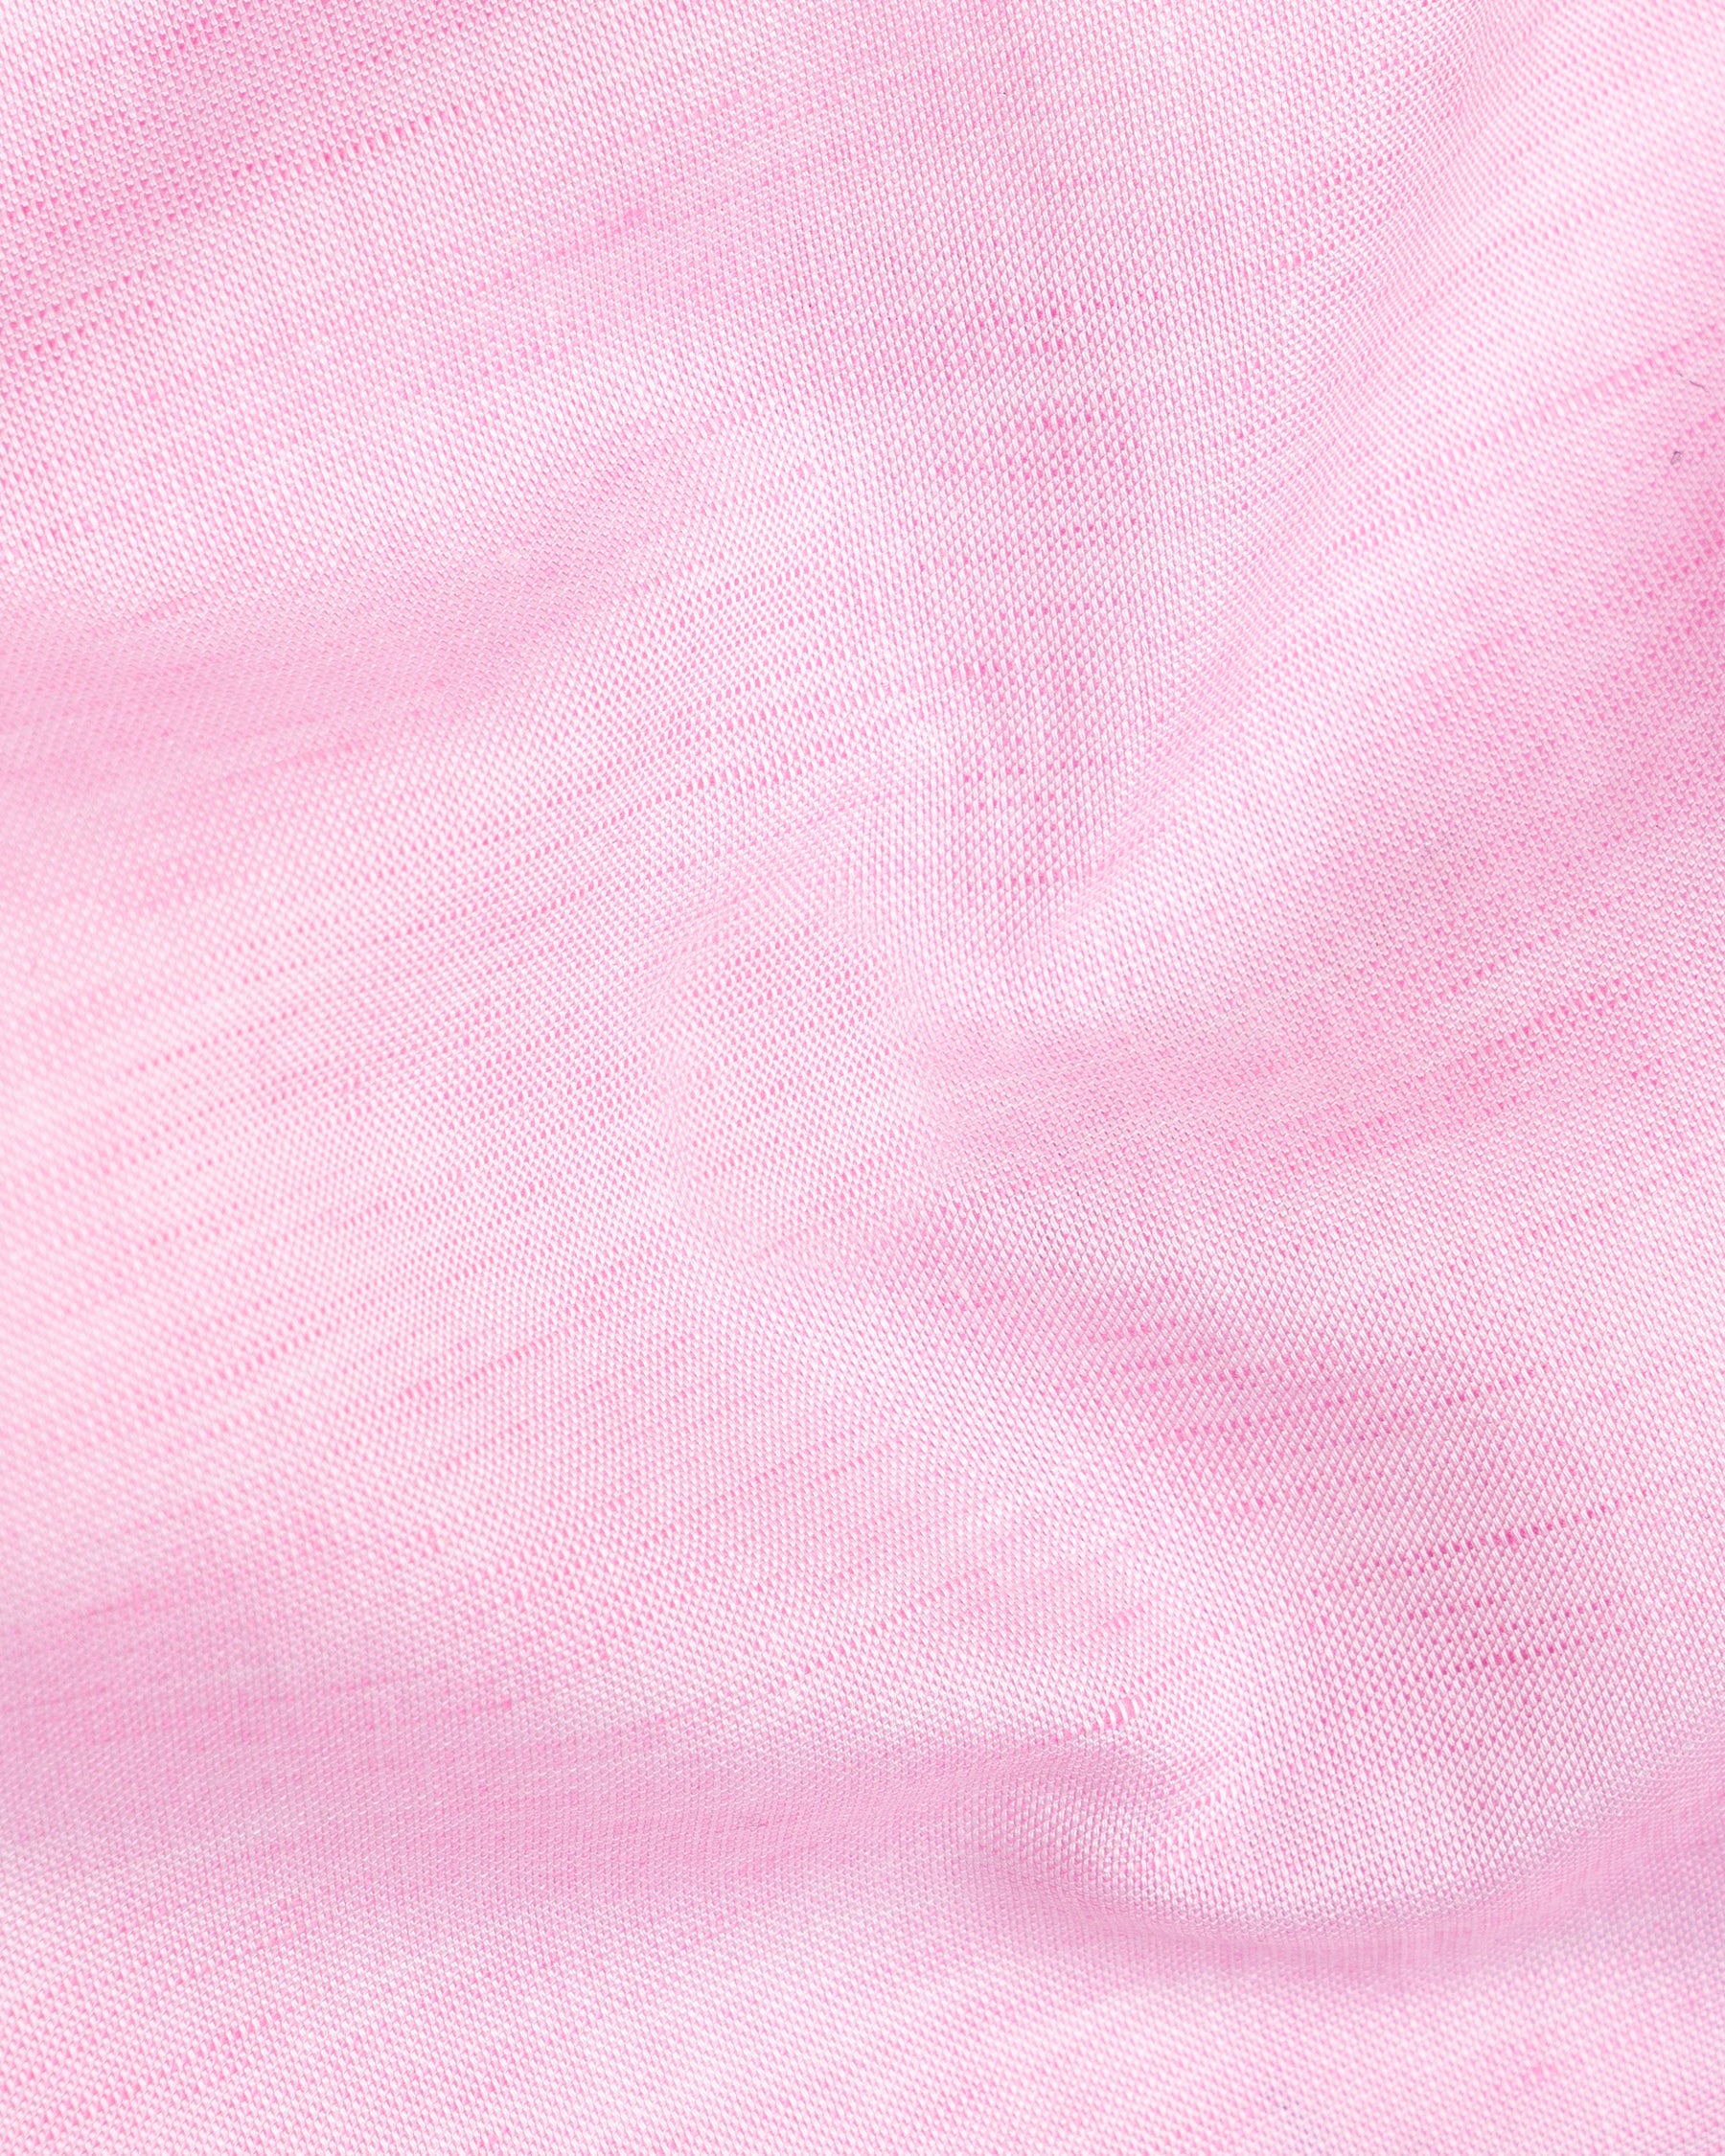 Cherub Pink Luxurious Linen Shirt 5173-CA-38, 5173-CA-H-38, 5173-CA-39, 5173-CA-H-39, 5173-CA-40, 5173-CA-H-40, 5173-CA-42, 5173-CA-H-42, 5173-CA-44, 5173-CA-H-44, 5173-CA-46, 5173-CA-H-46, 5173-CA-48, 5173-CA-H-48, 5173-CA-50, 5173-CA-H-50, 5173-CA-52, 5173-CA-H-52